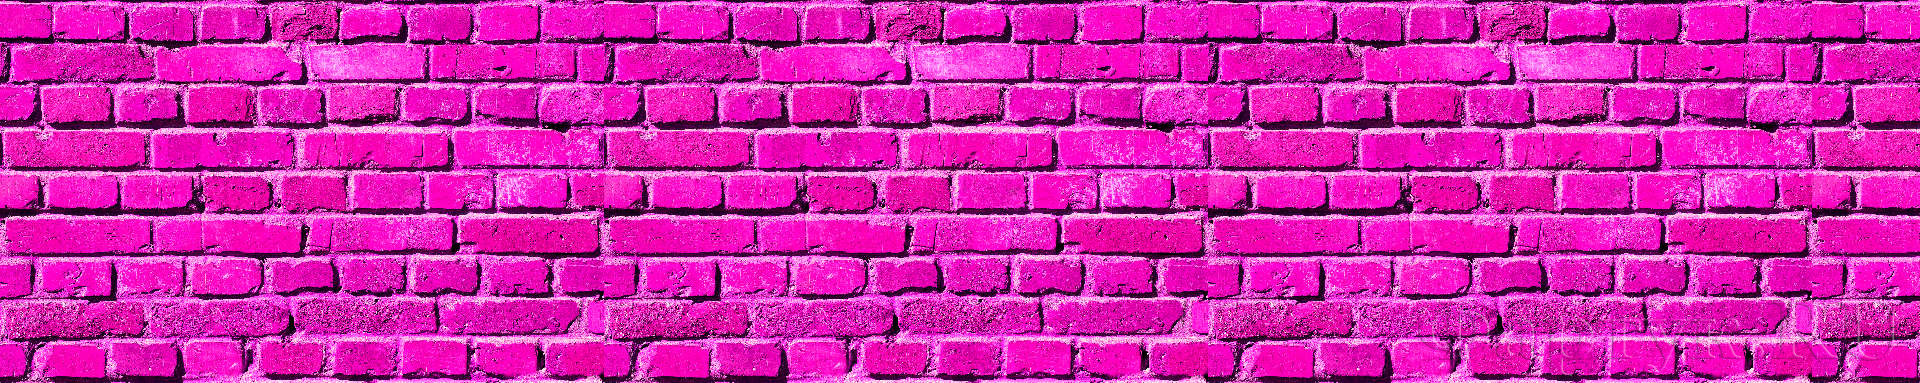 Стена из розовых кирпичей